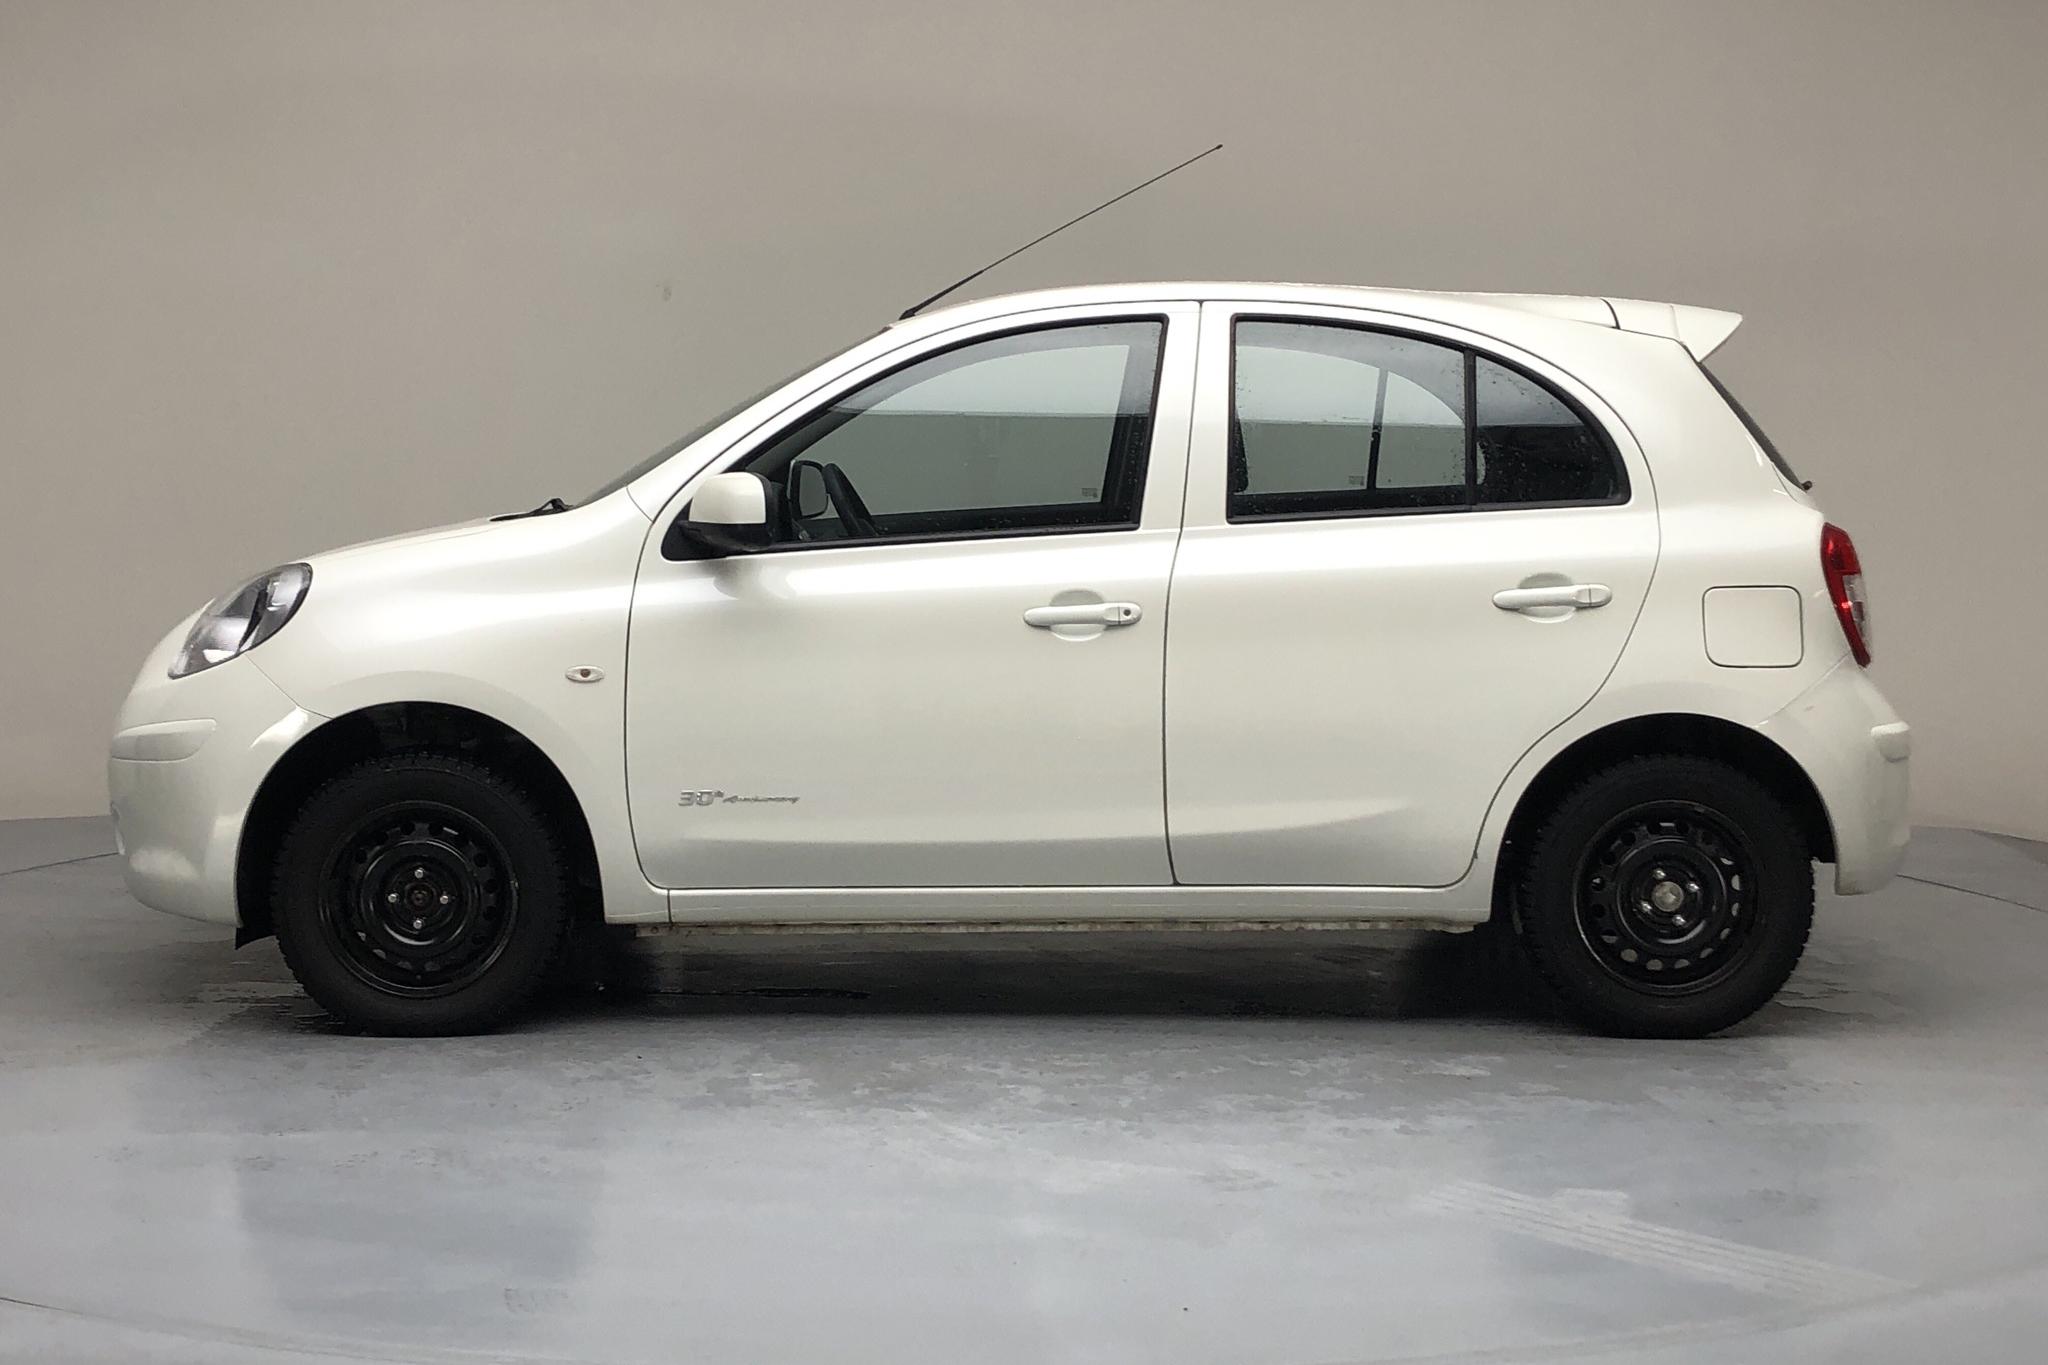 Nissan Micra 1.2 5dr (80hk) - 65 600 km - Manual - white - 2013